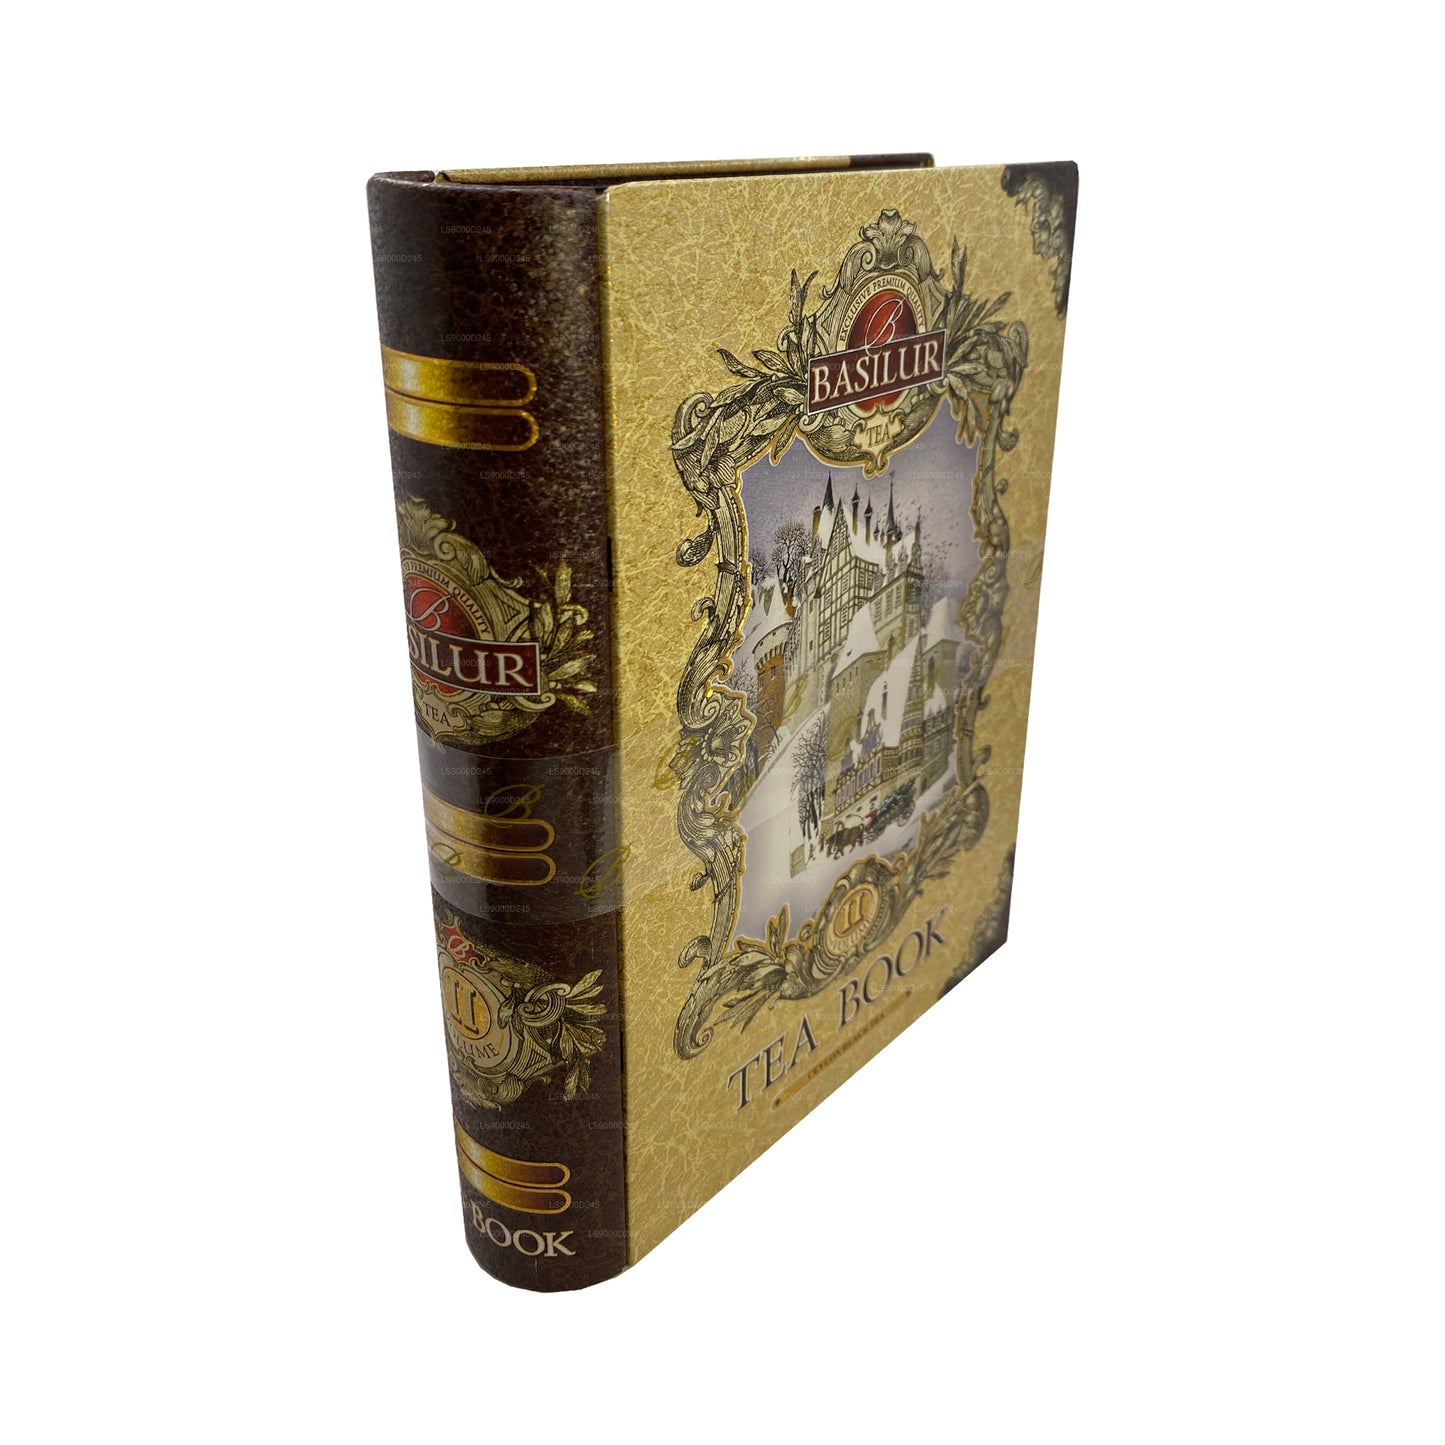 Basilur Çay Kitabı “Çay Kitabı Cilt II - Altın” (100g) Caddy